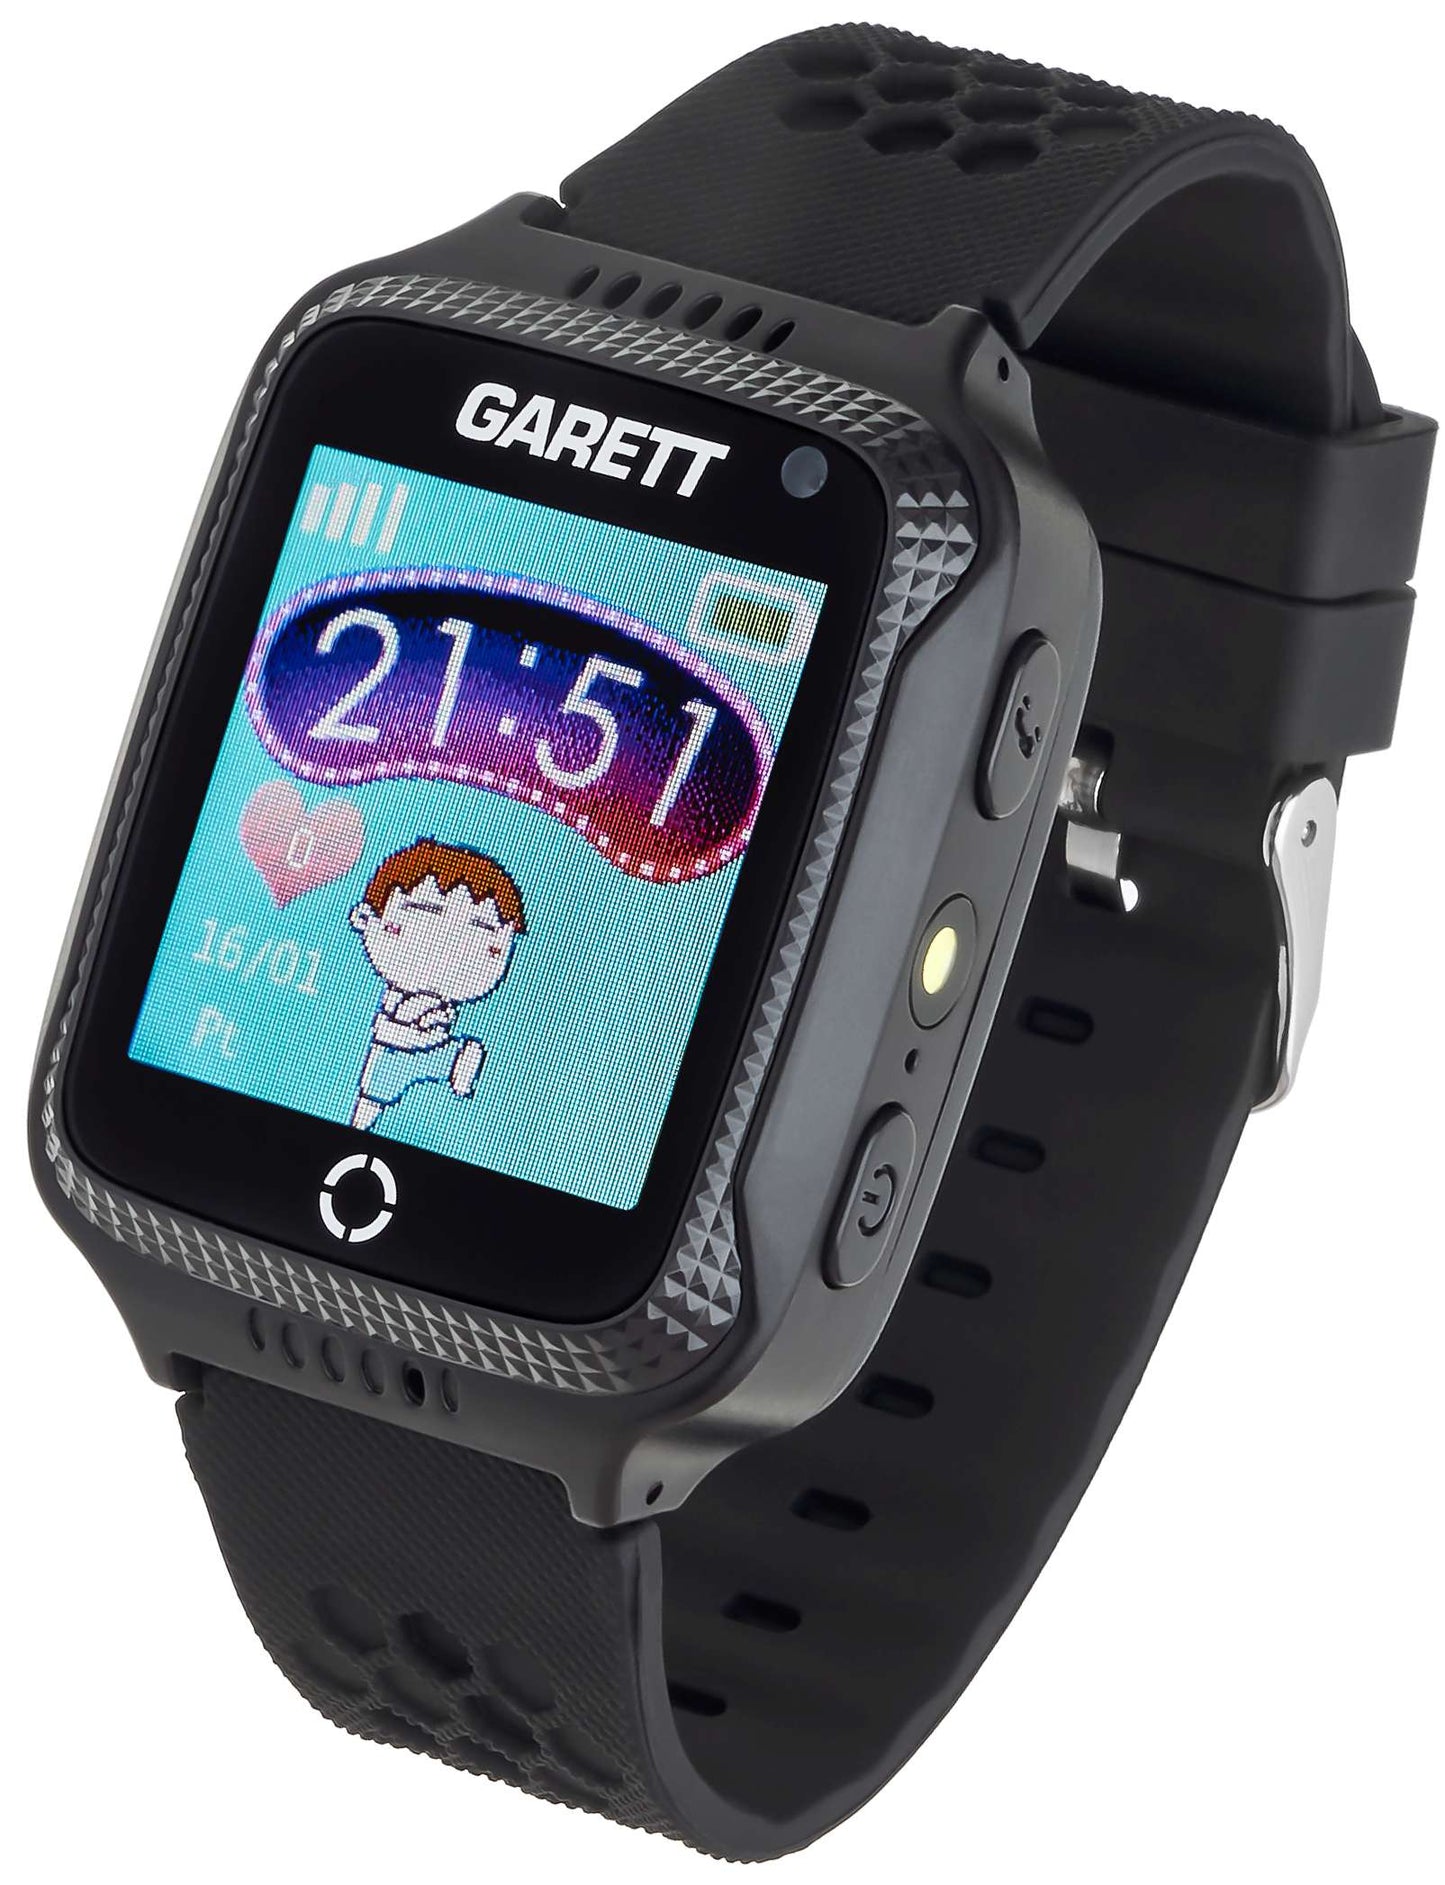 Garett Kids Cool 2G, Smart watch, black